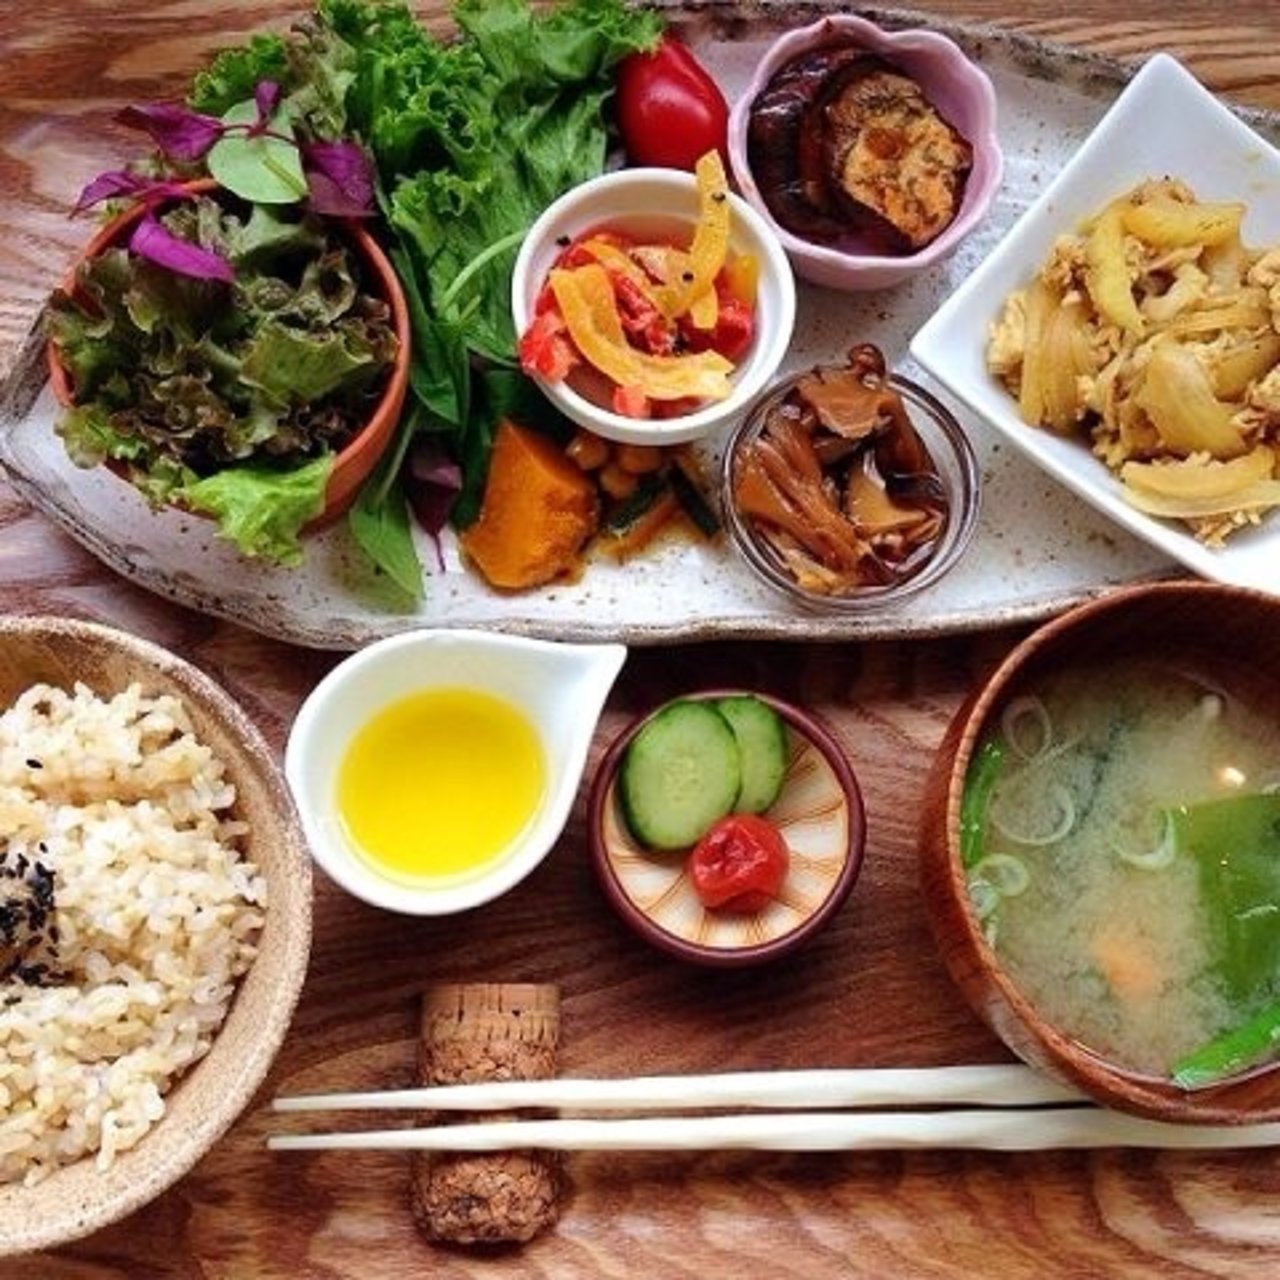 大阪ランチ バランス 身体が喜ぶ玄米中心の健康ランチ Sarah サラ 料理メニューから探せるグルメサイト